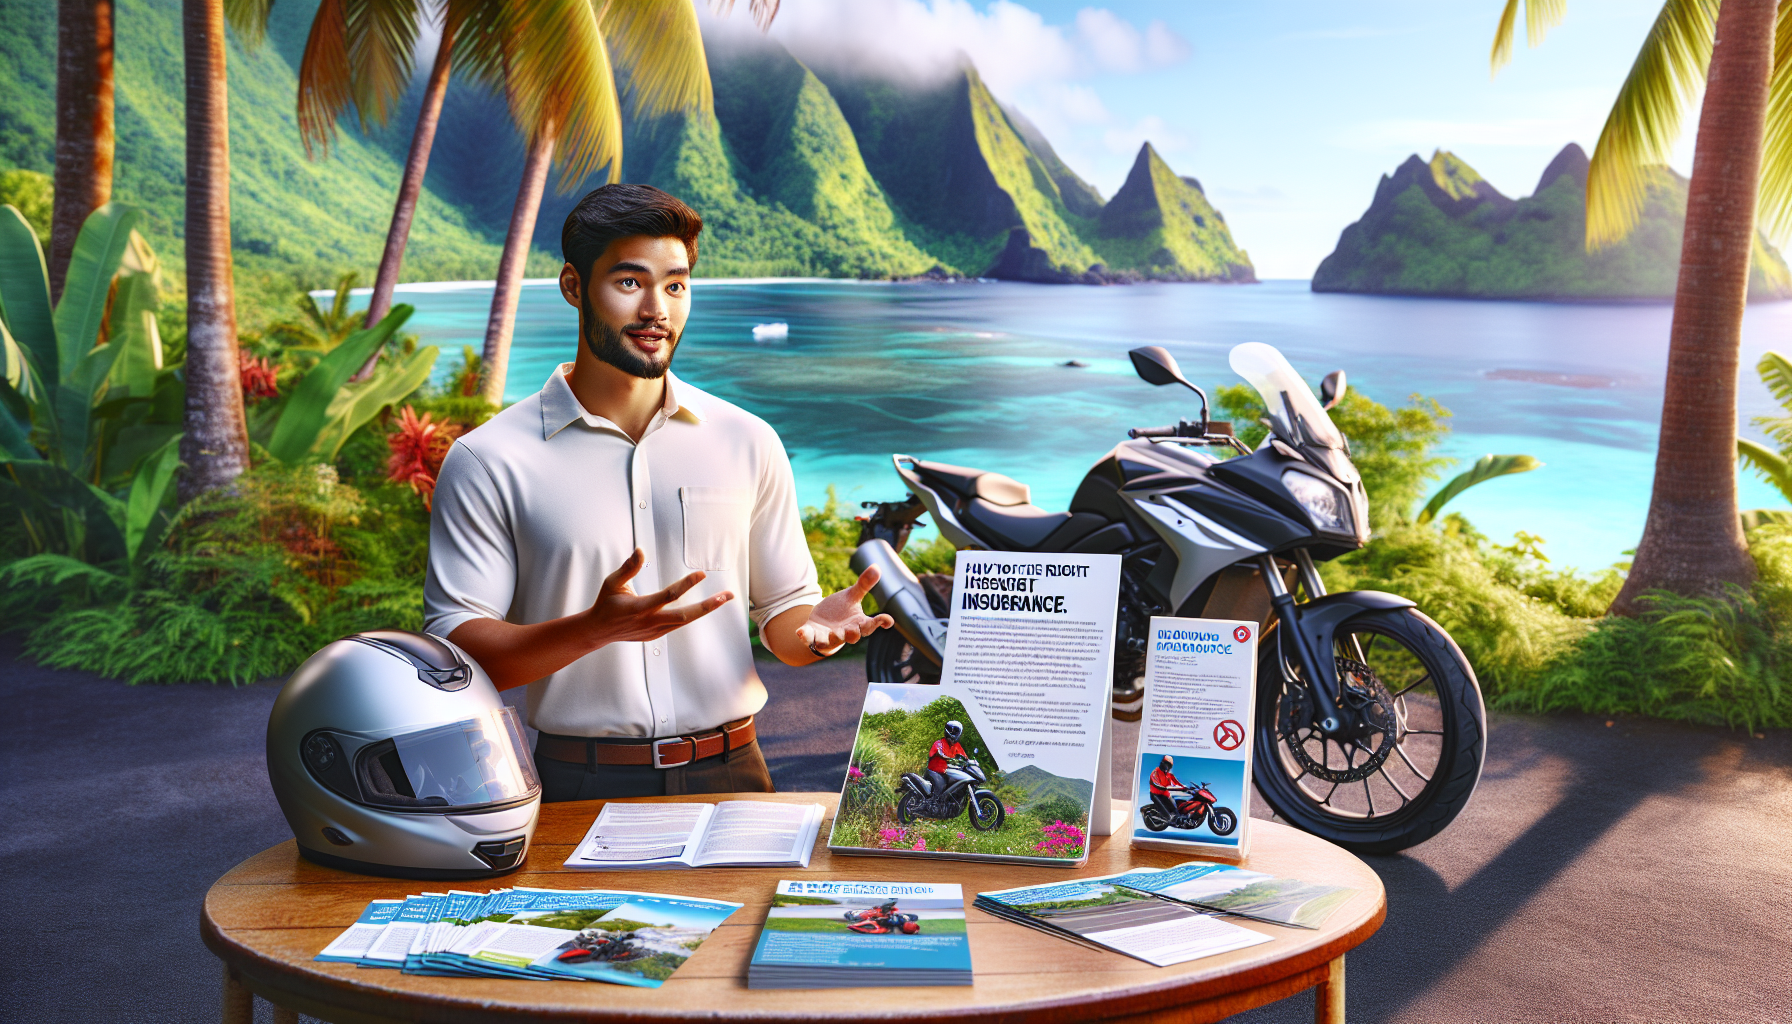 découvrez les avantages de souscrire une assurance moto à la réunion pour rouler en toute sécurité sur cette magnifique île de l'océan indien. profitez de notre expertise pour choisir la meilleure assurance moto adaptée à vos besoins.